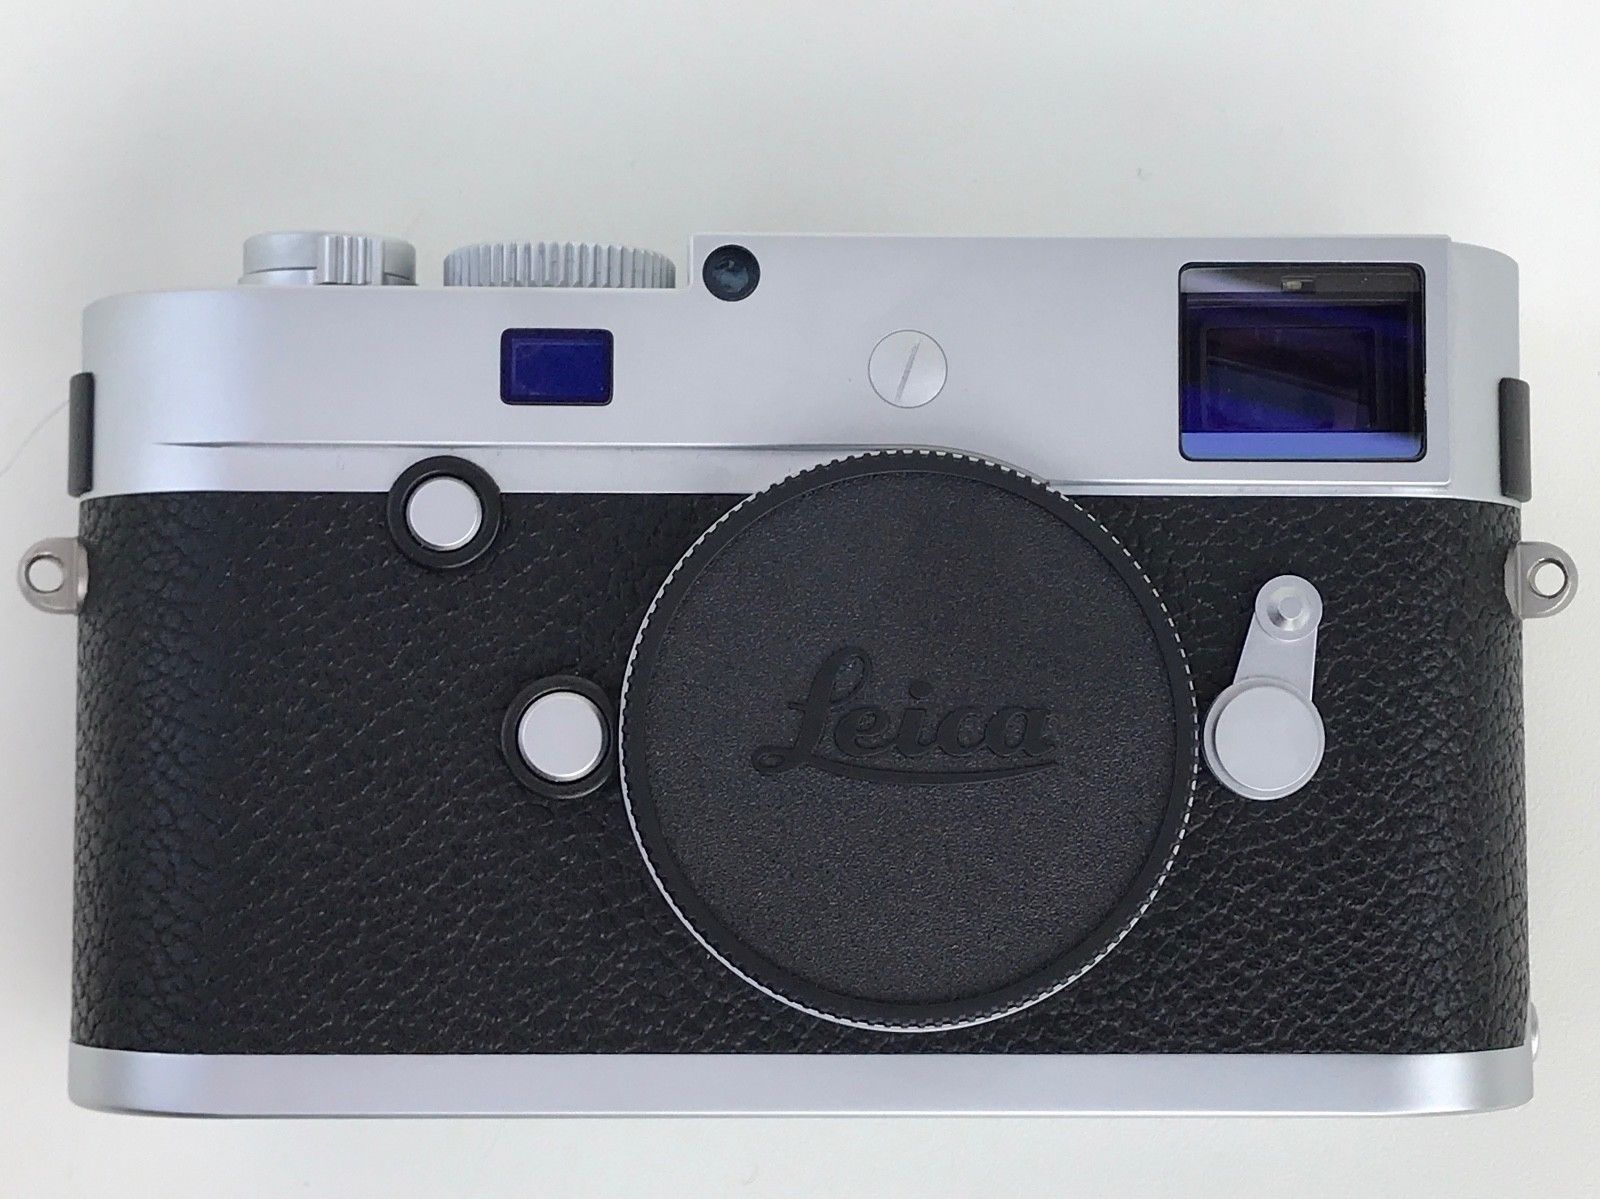 Leica M-P (Typ 240) 24.0 MP-Silber-boxed-neuwertig-MINT-komplett-MwSt ausweisbar